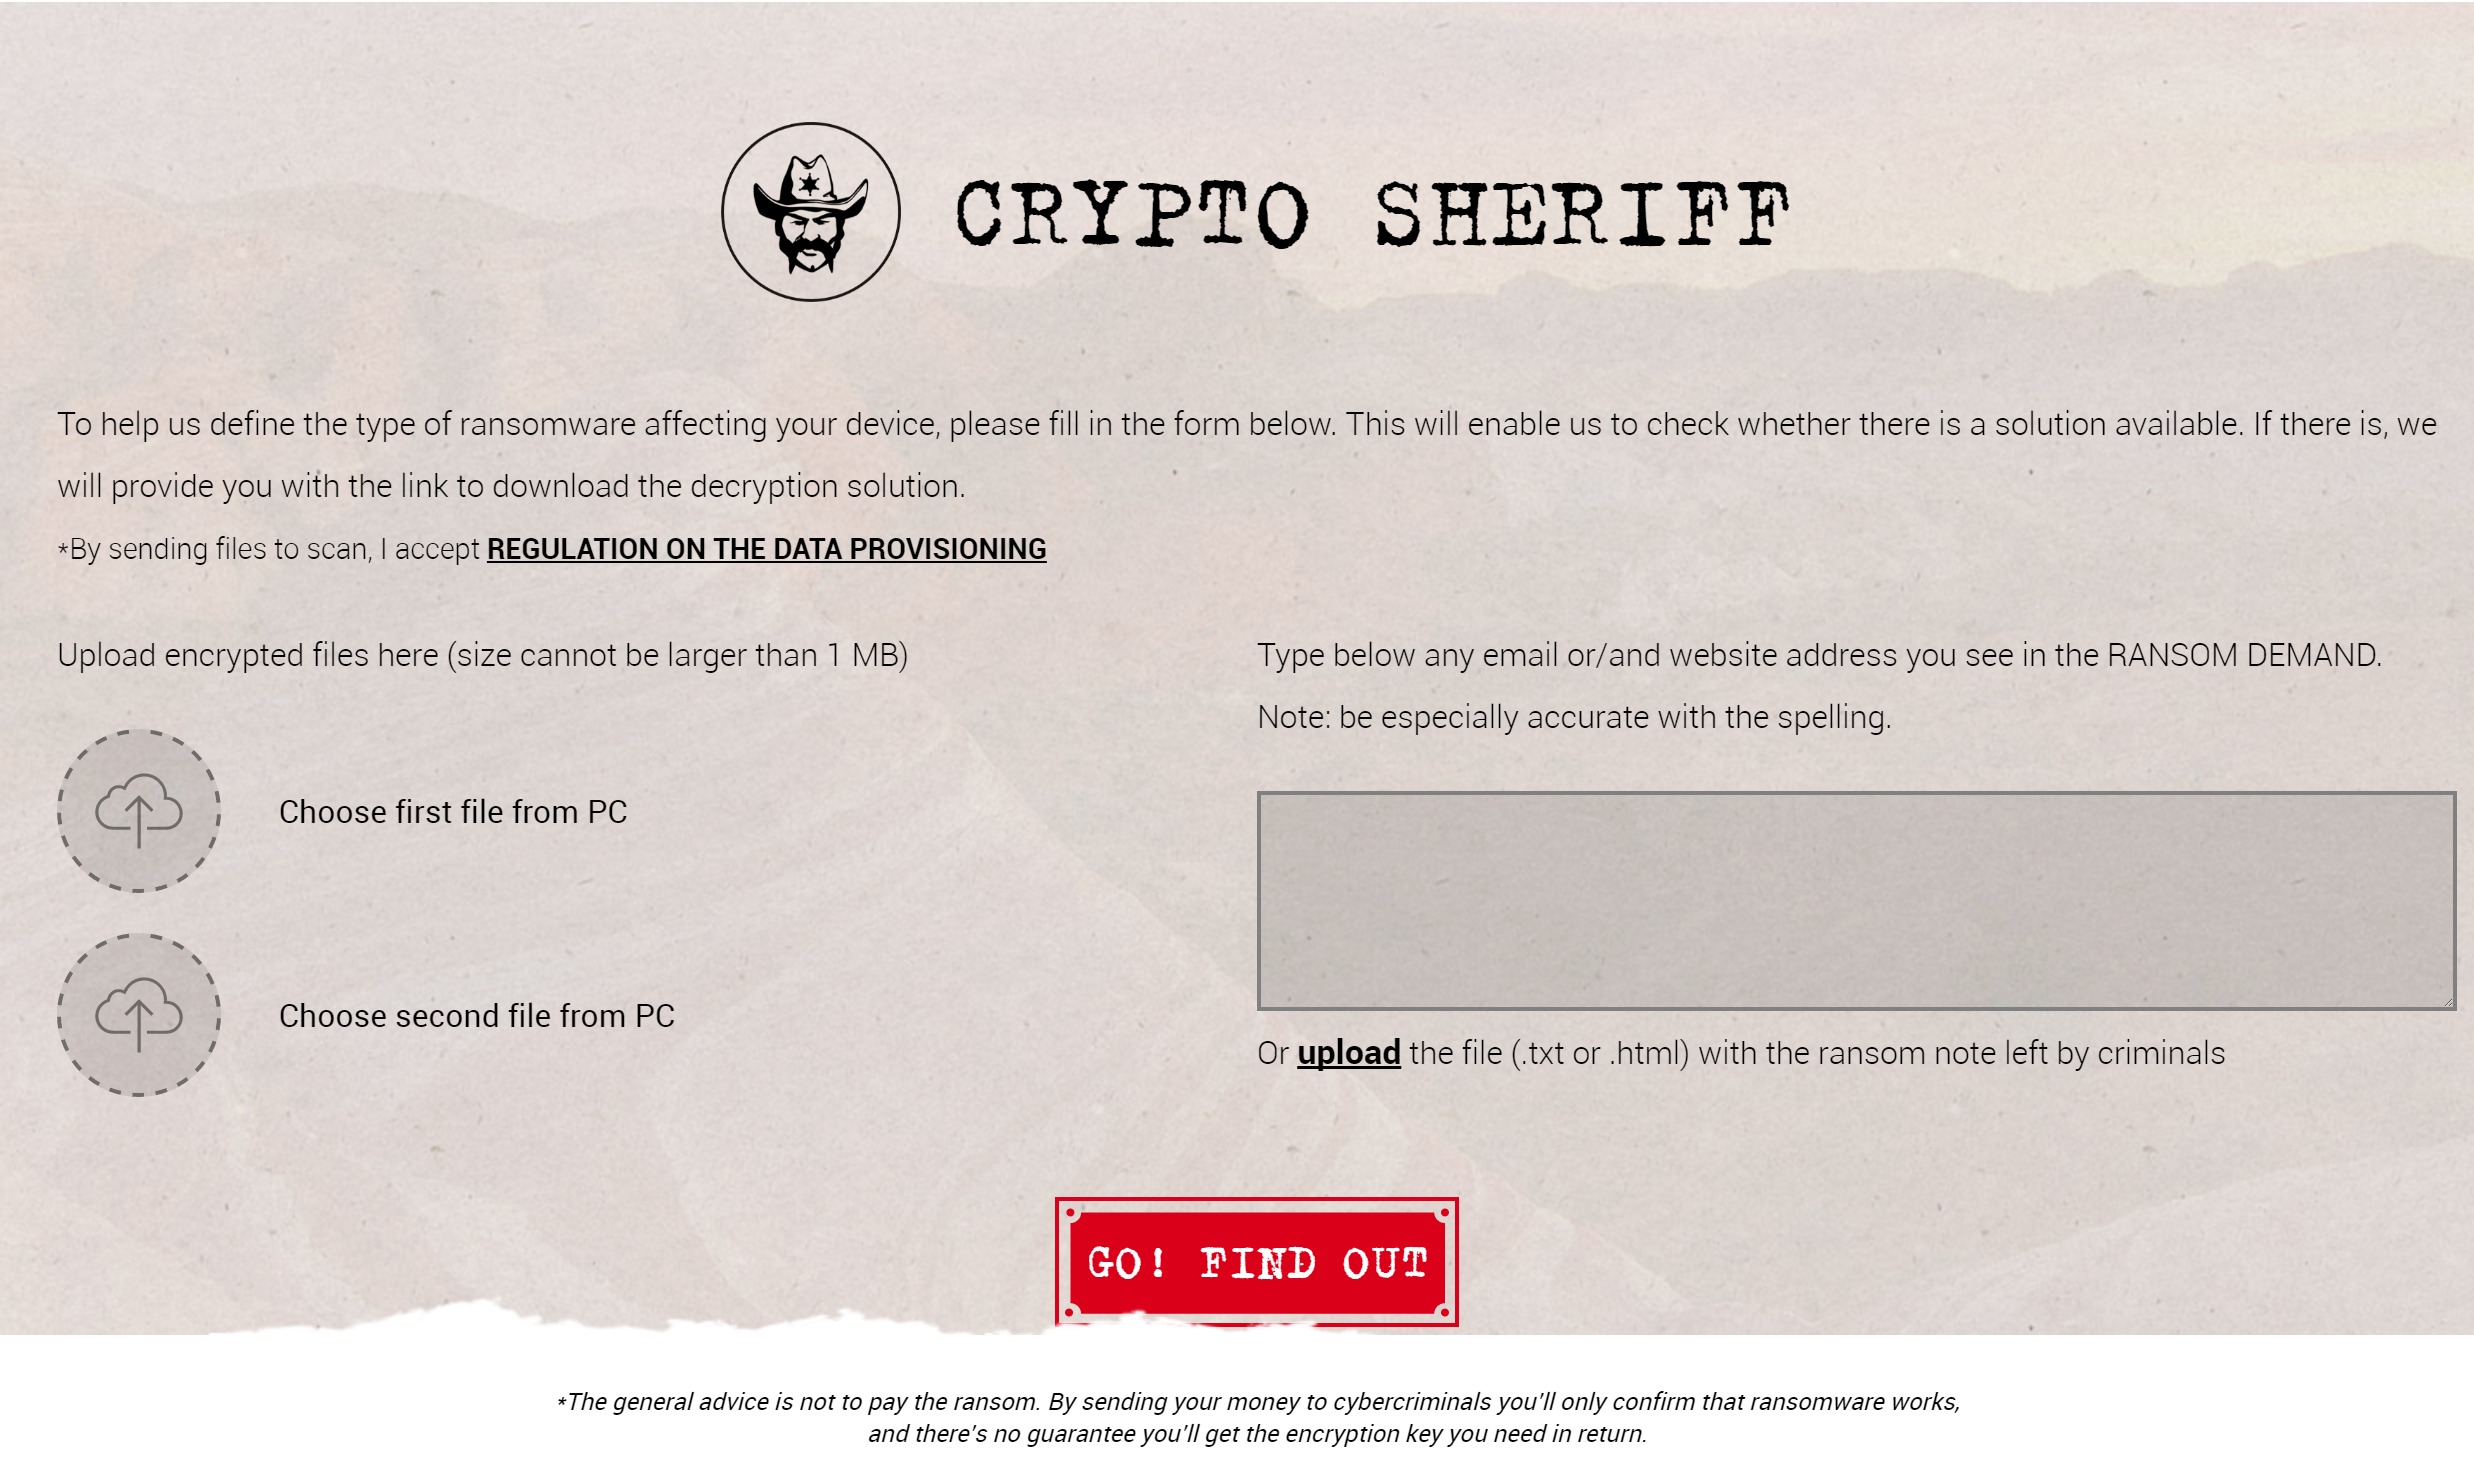 صفحه­‌ی اول سایت Crypto-sheriff شامل ابزار ساده‌­ای برای کشف نوع باج افزاری که ممکن است پی سی شما دچار آن شده باشد است.